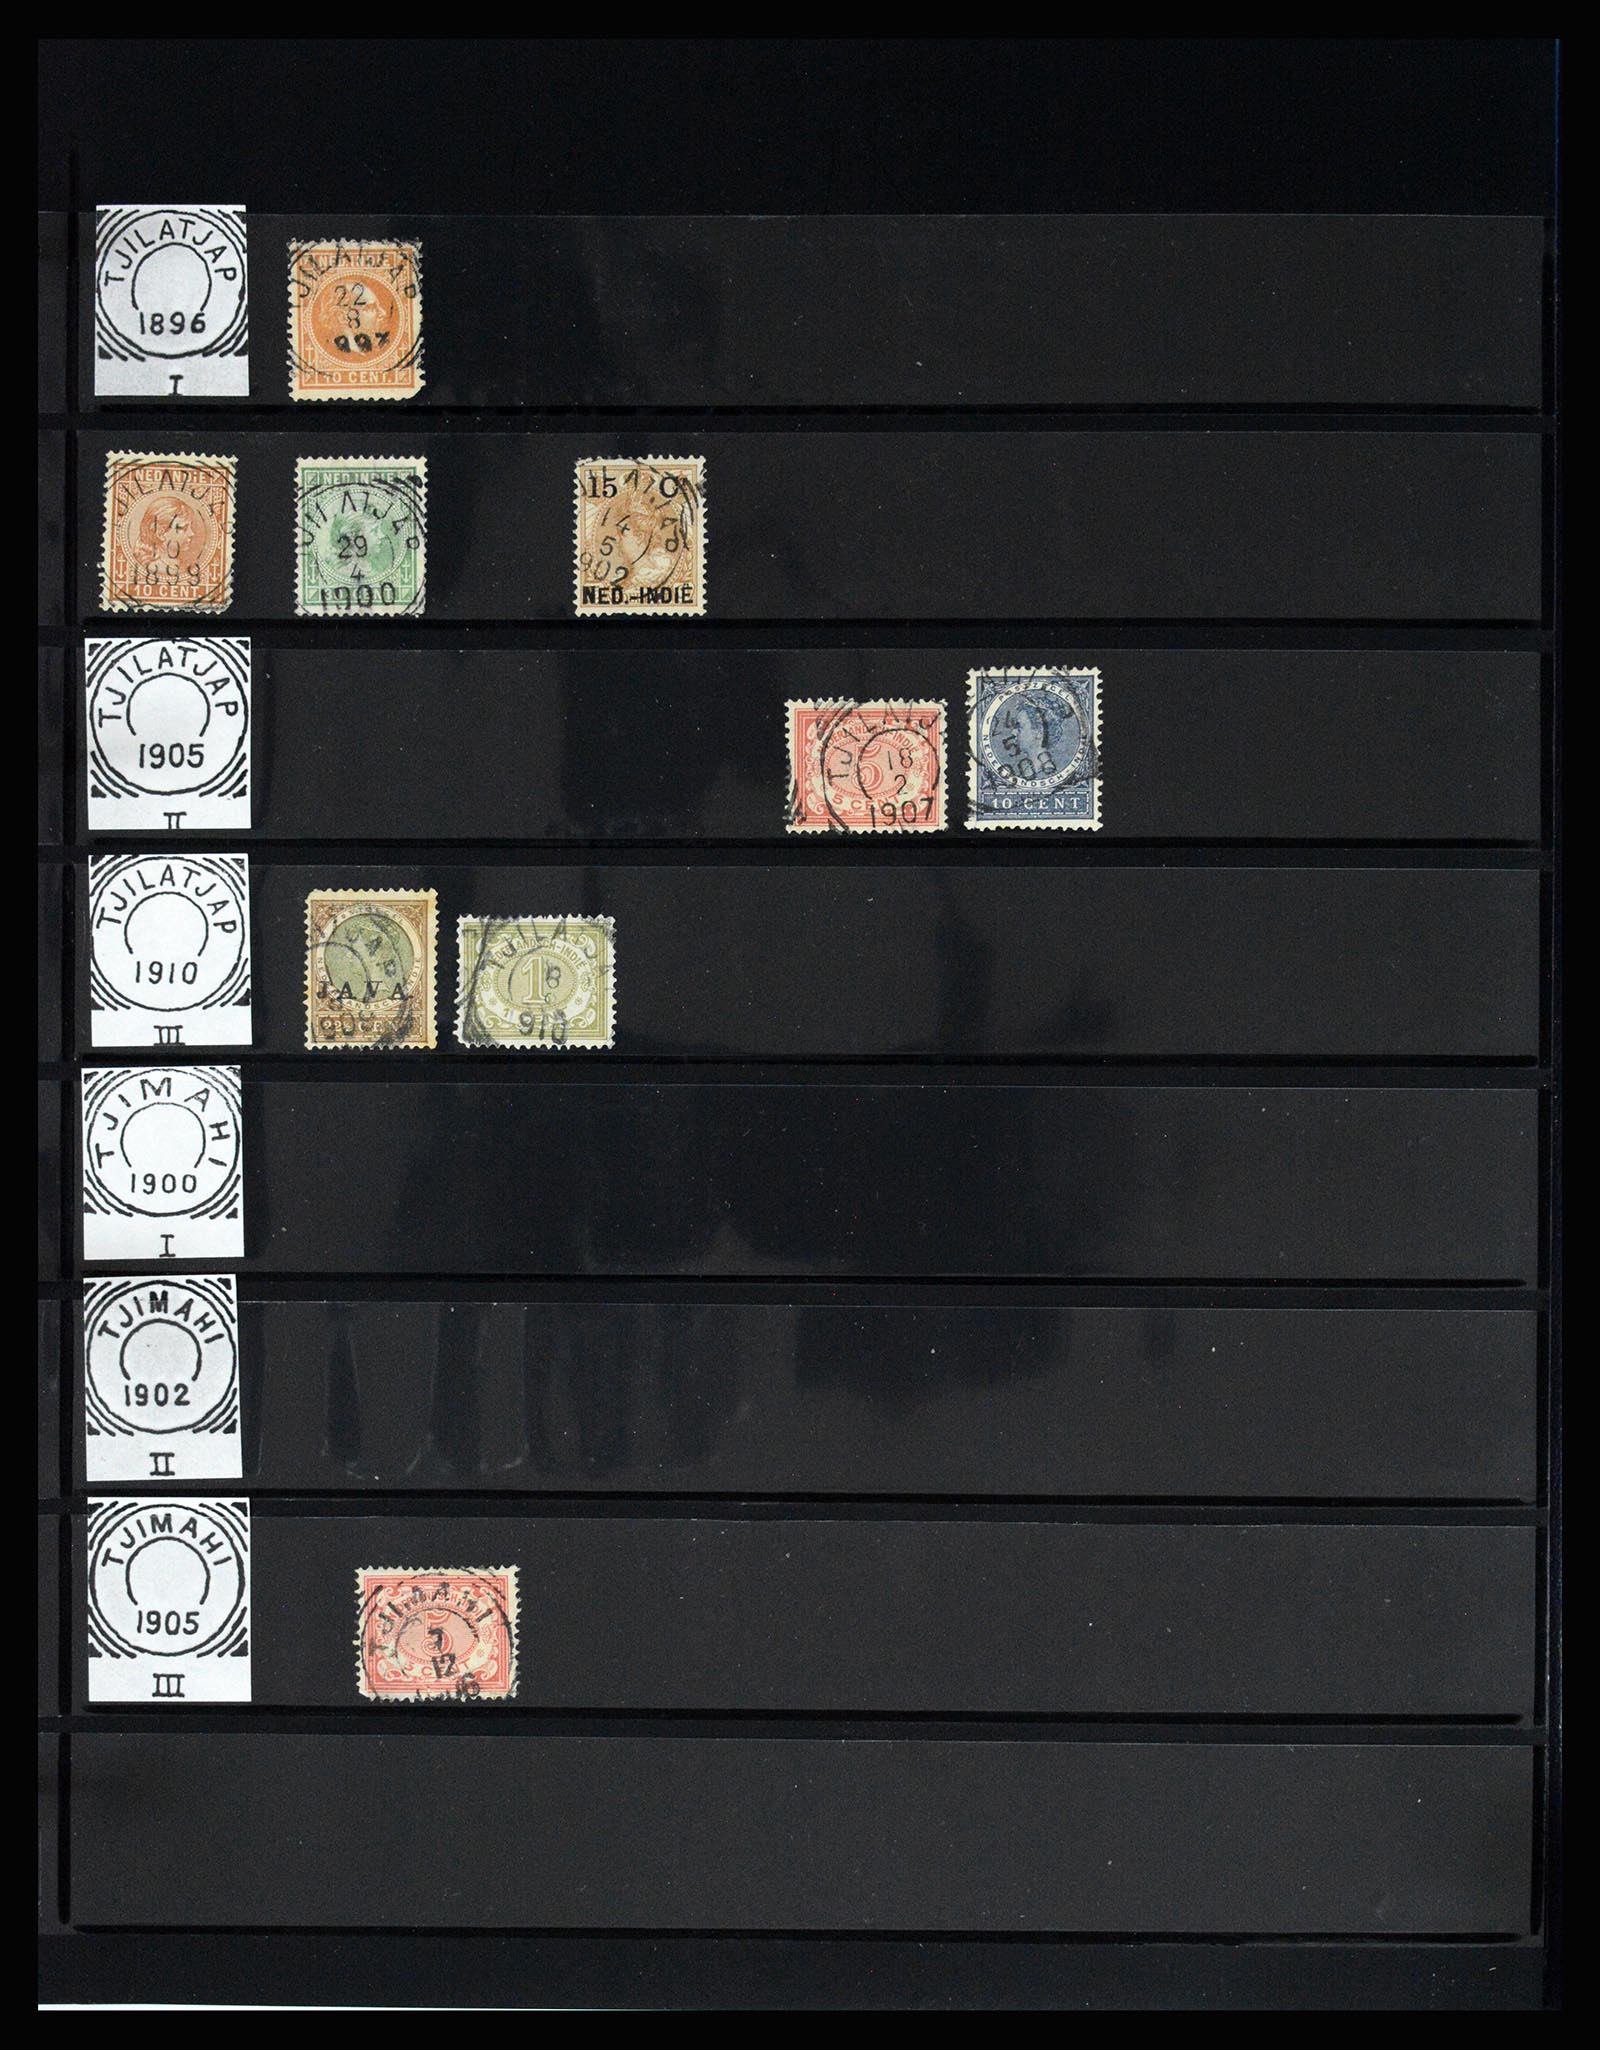 36512 160 - Stamp collection 36512 Nederlands Indië stempels 1872-1930.